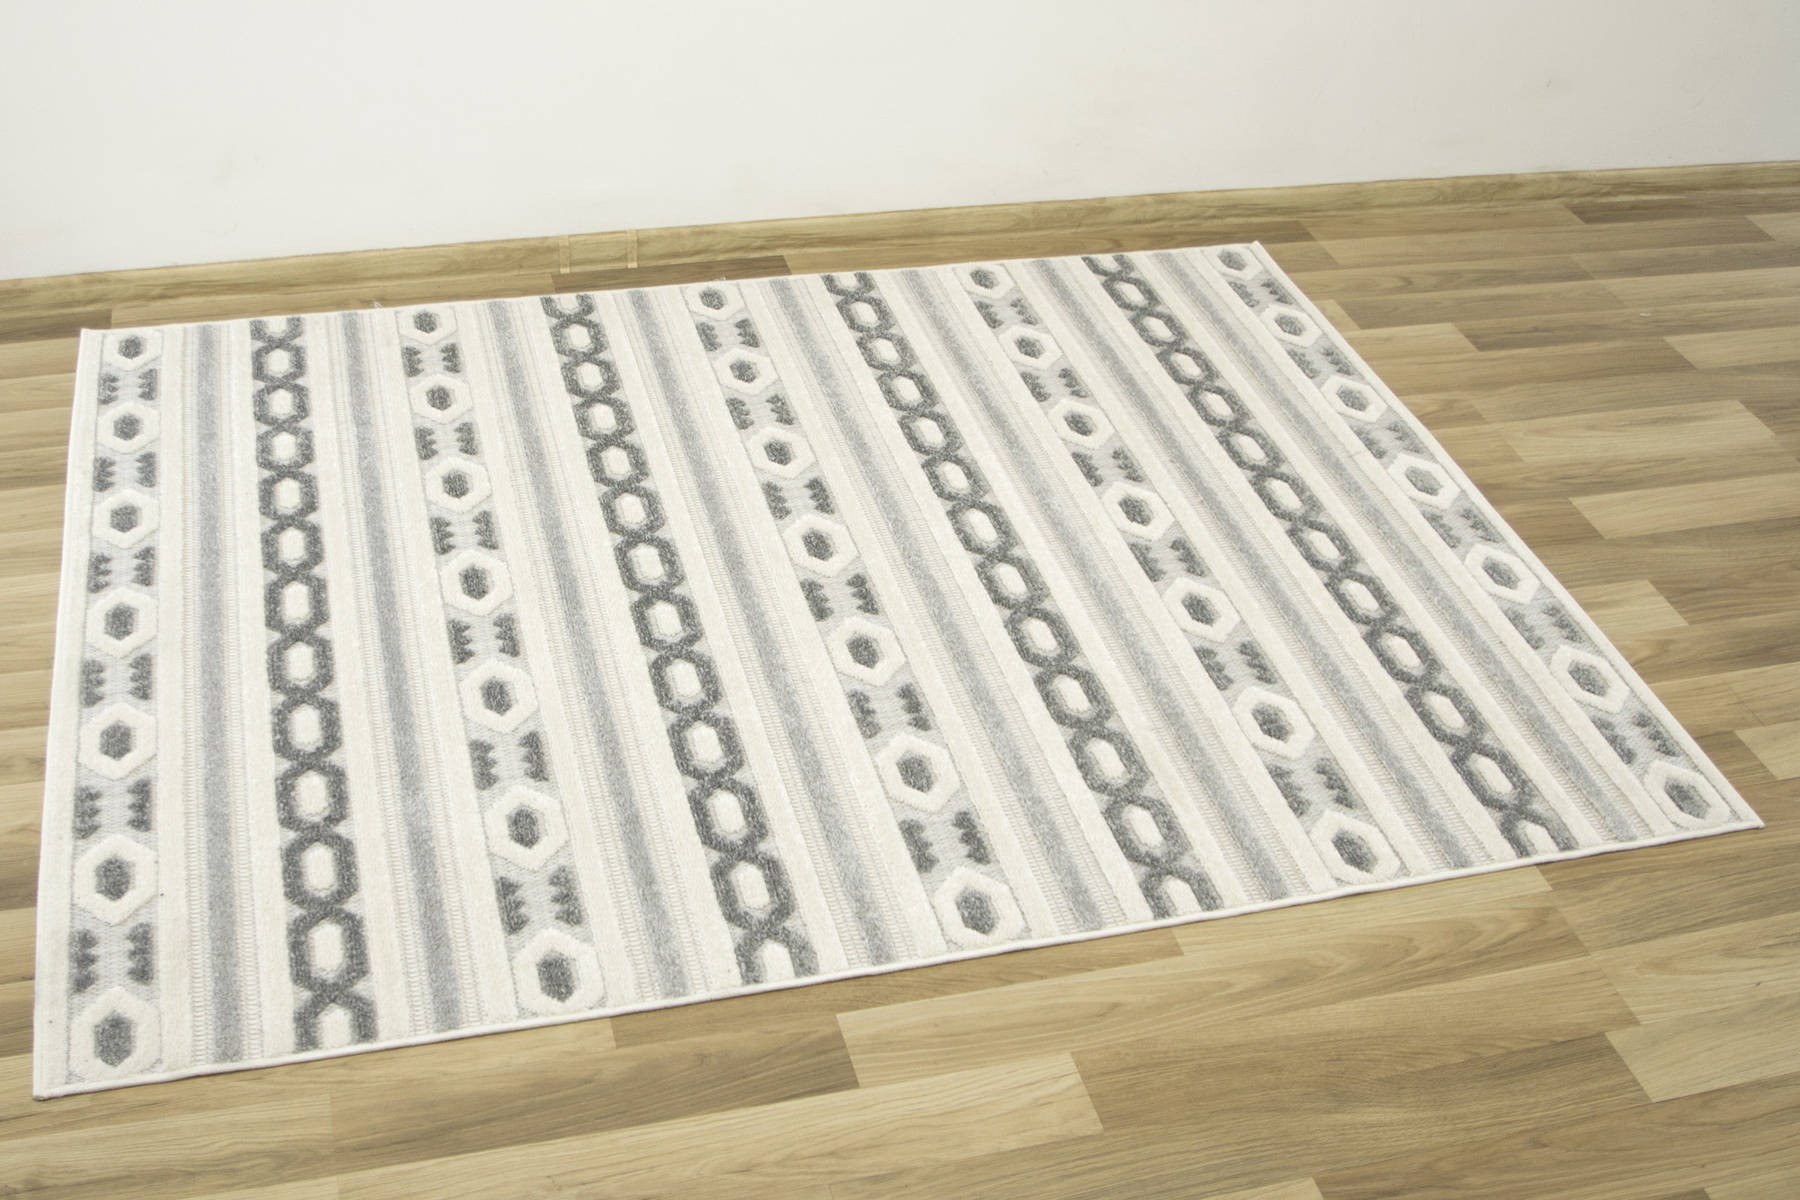 Šnúrkový koberec Stella D402A Etno sivý / strieborný / krémový